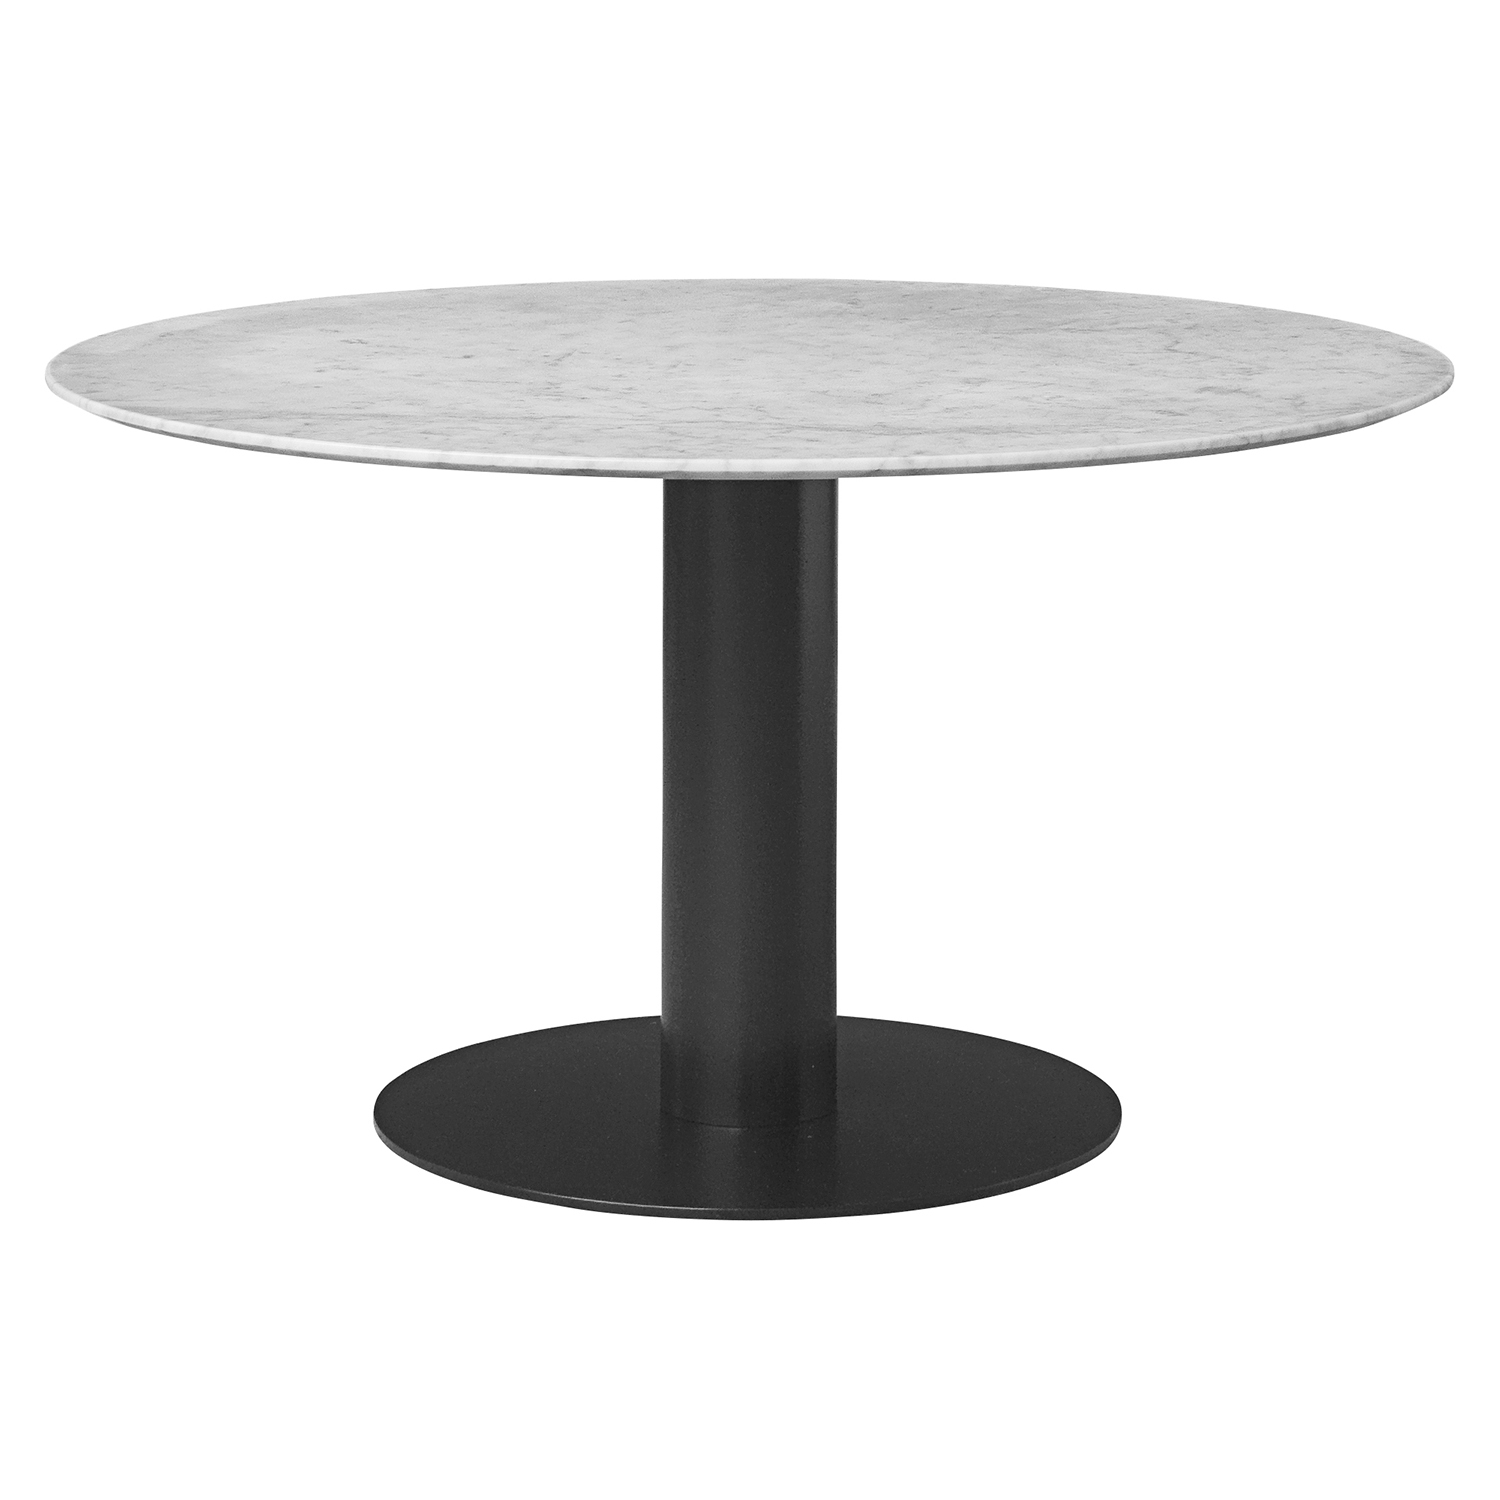 Husk Palads Selv tak 2.0 Dining Table Bianco Carrara/Black Ø130 cm - Gubi @ RoyalDesign.dk